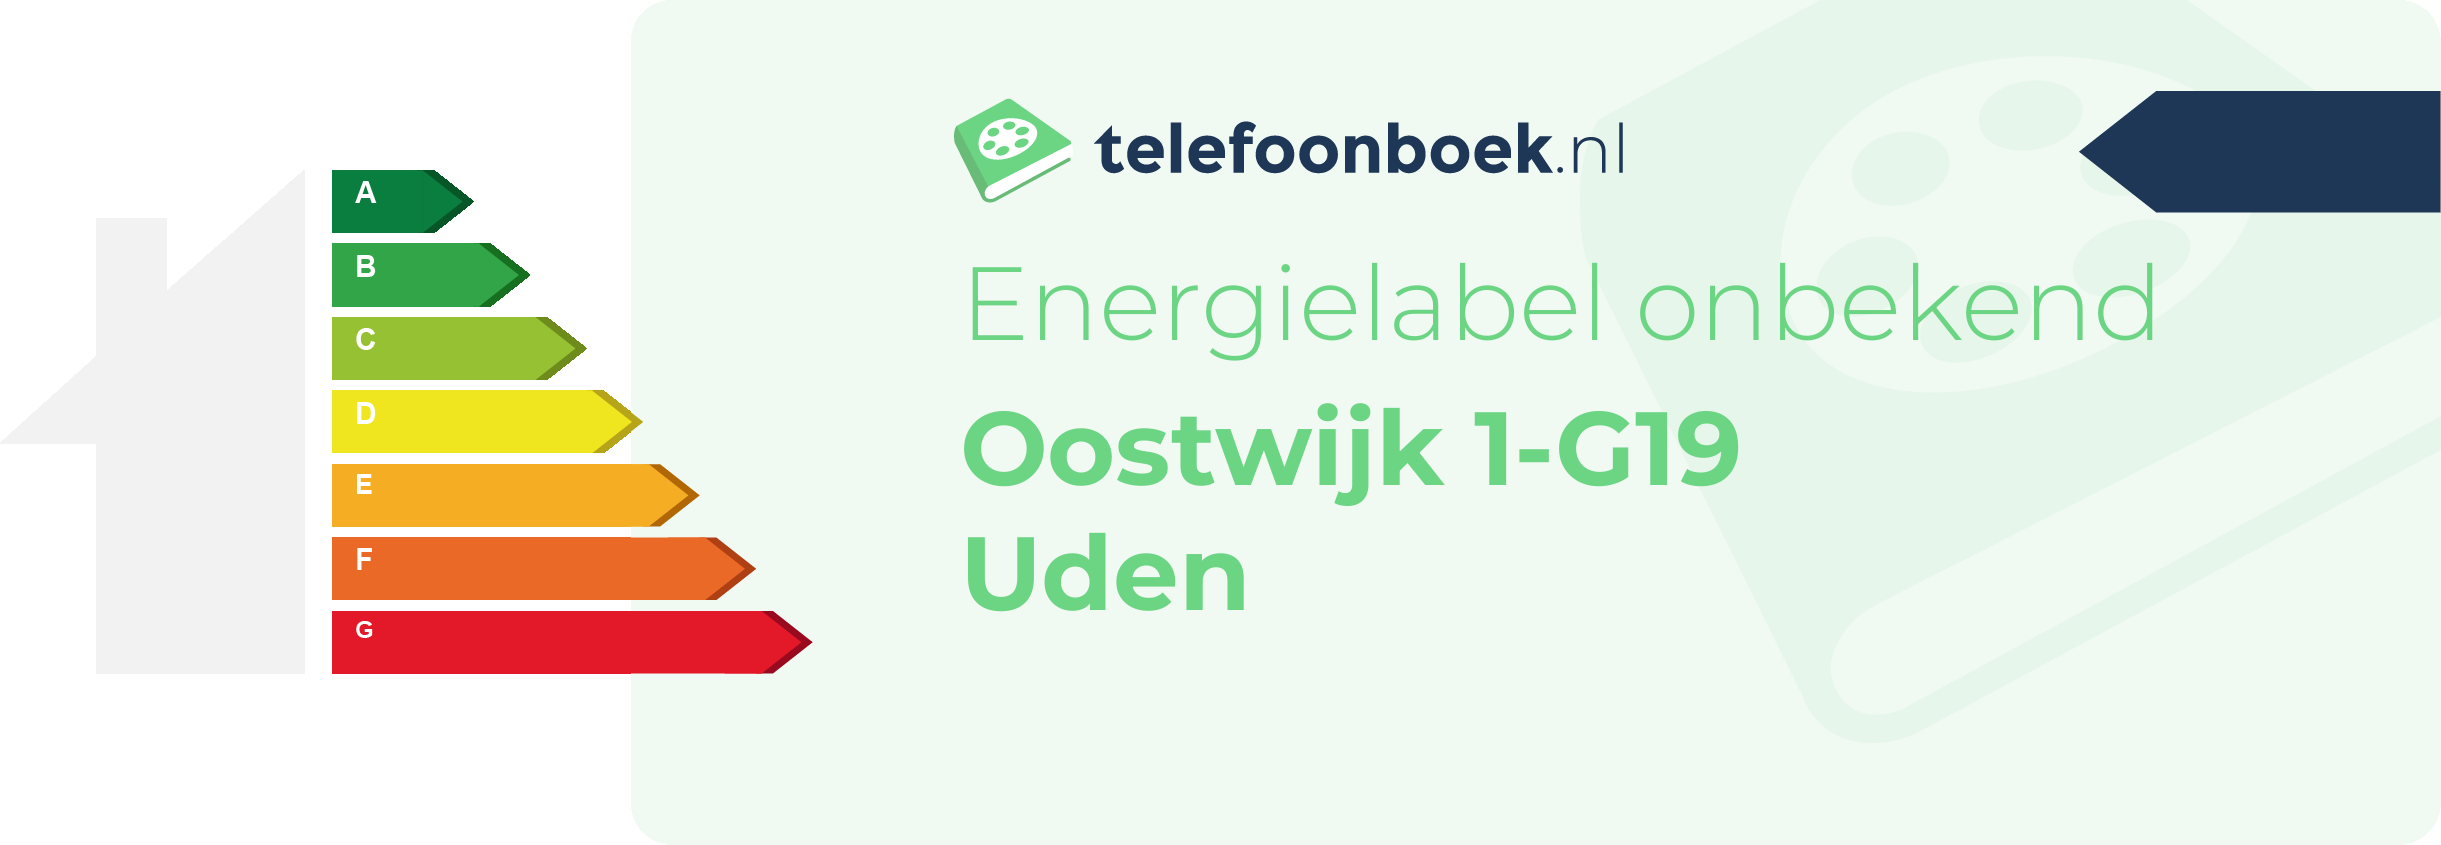 Energielabel Oostwijk 1-G19 Uden